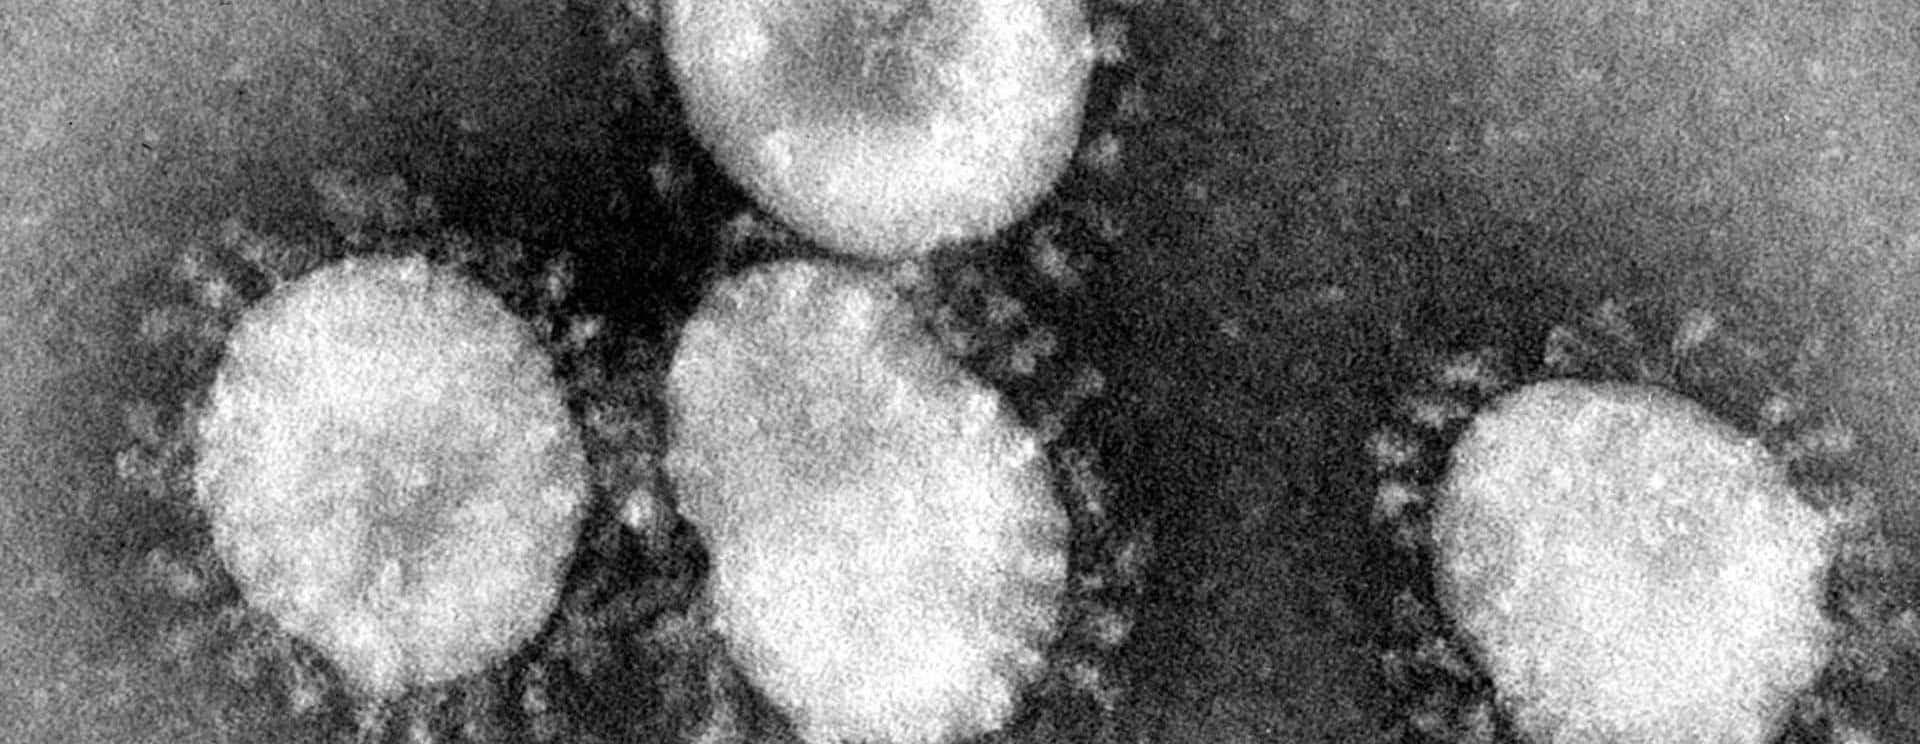 coronaviruses-jpg-35